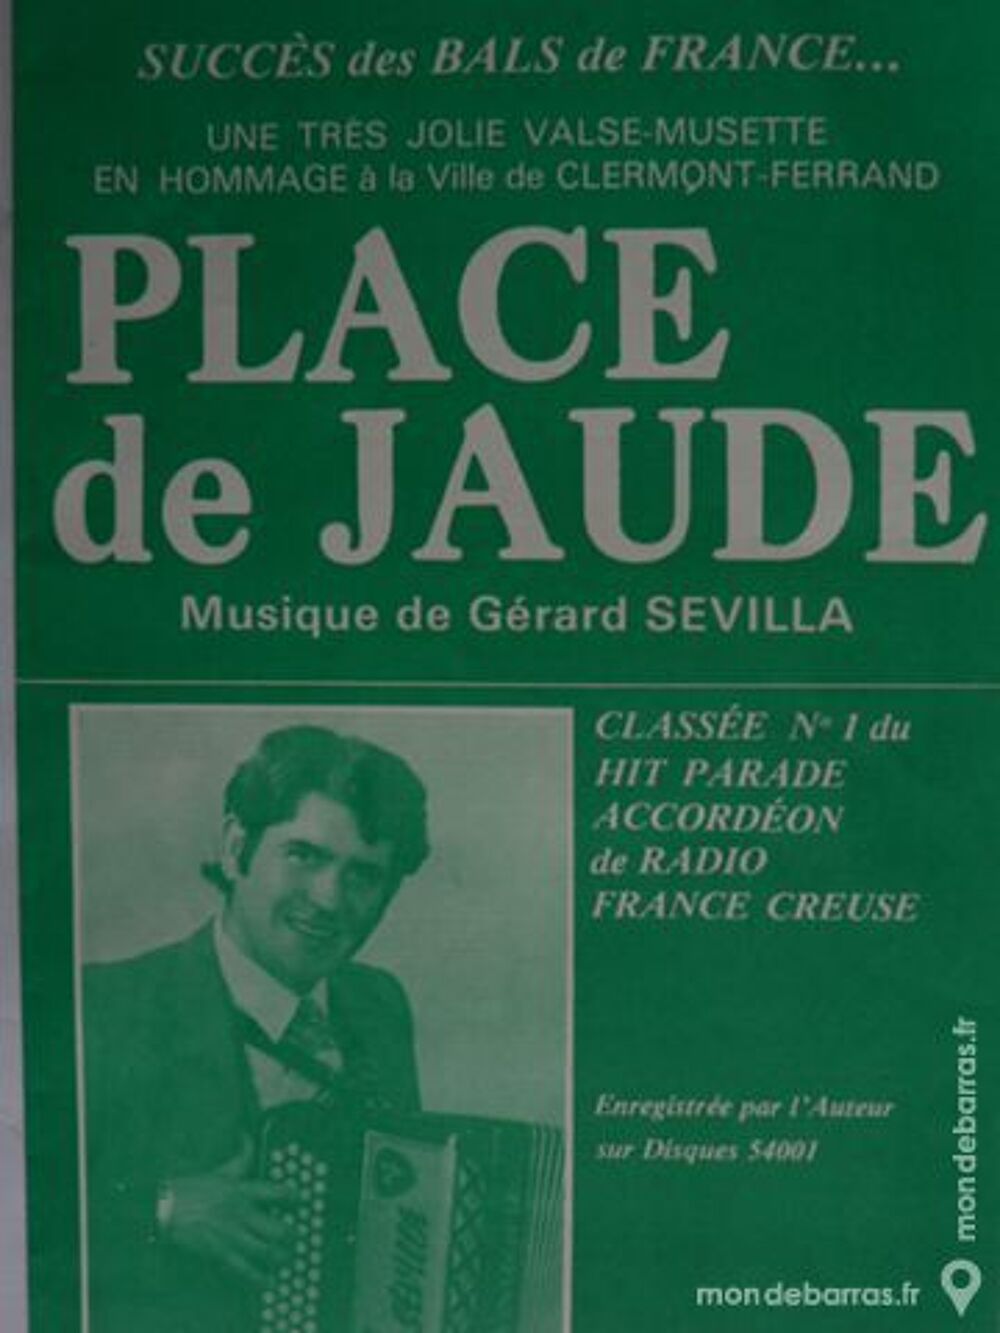 Accordeon: PLACE DE JAUDE de GERARD SEVILLA Instruments de musique